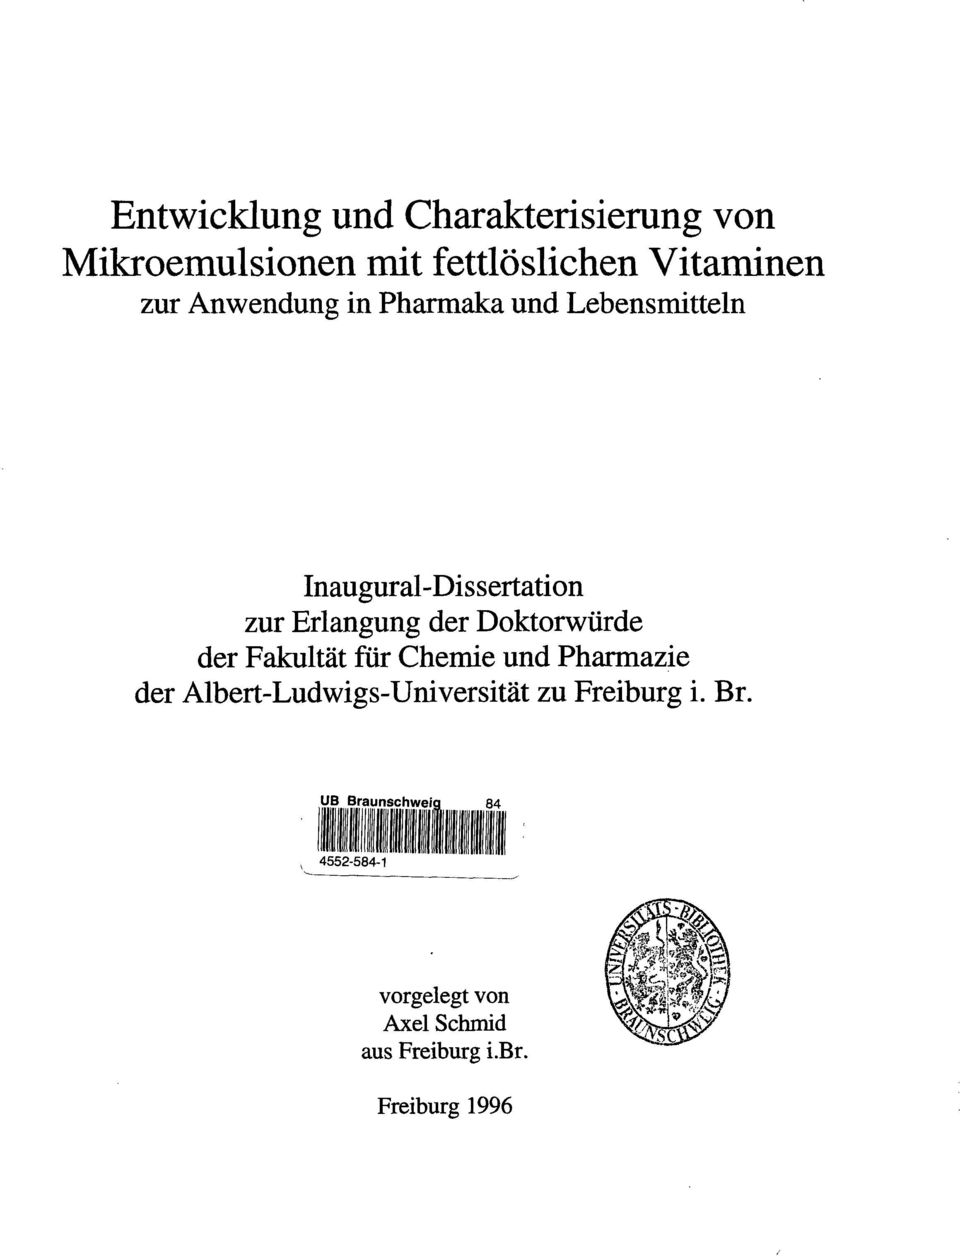 Doktorwürde der Fakultät für Chemie und Pharmazie der Albert-Ludwigs-Universität zu